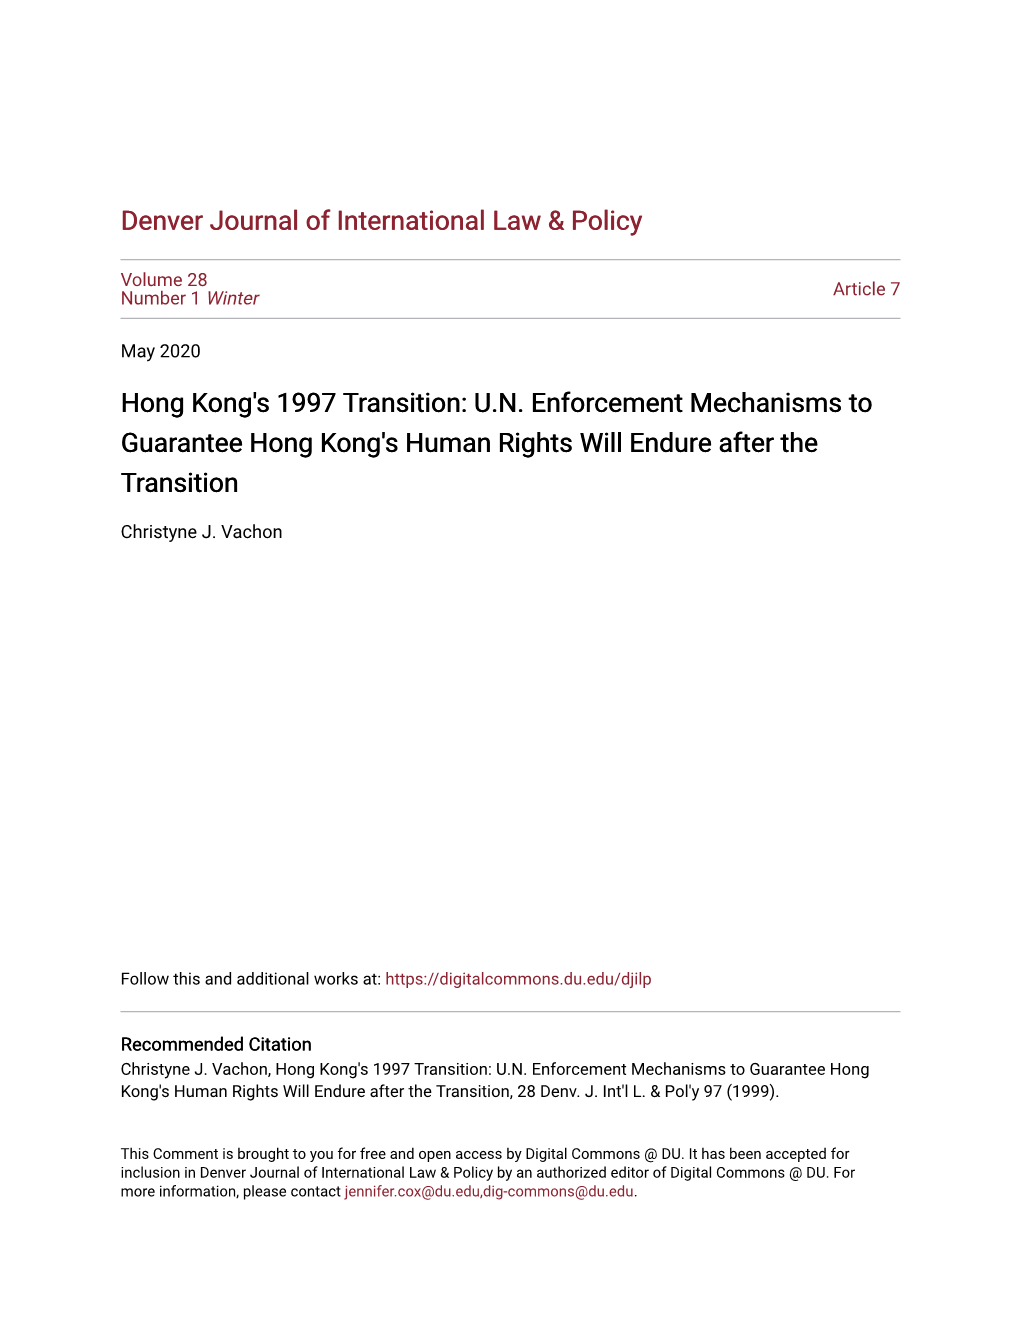 Hong Kong's 1997 Transition: U.N